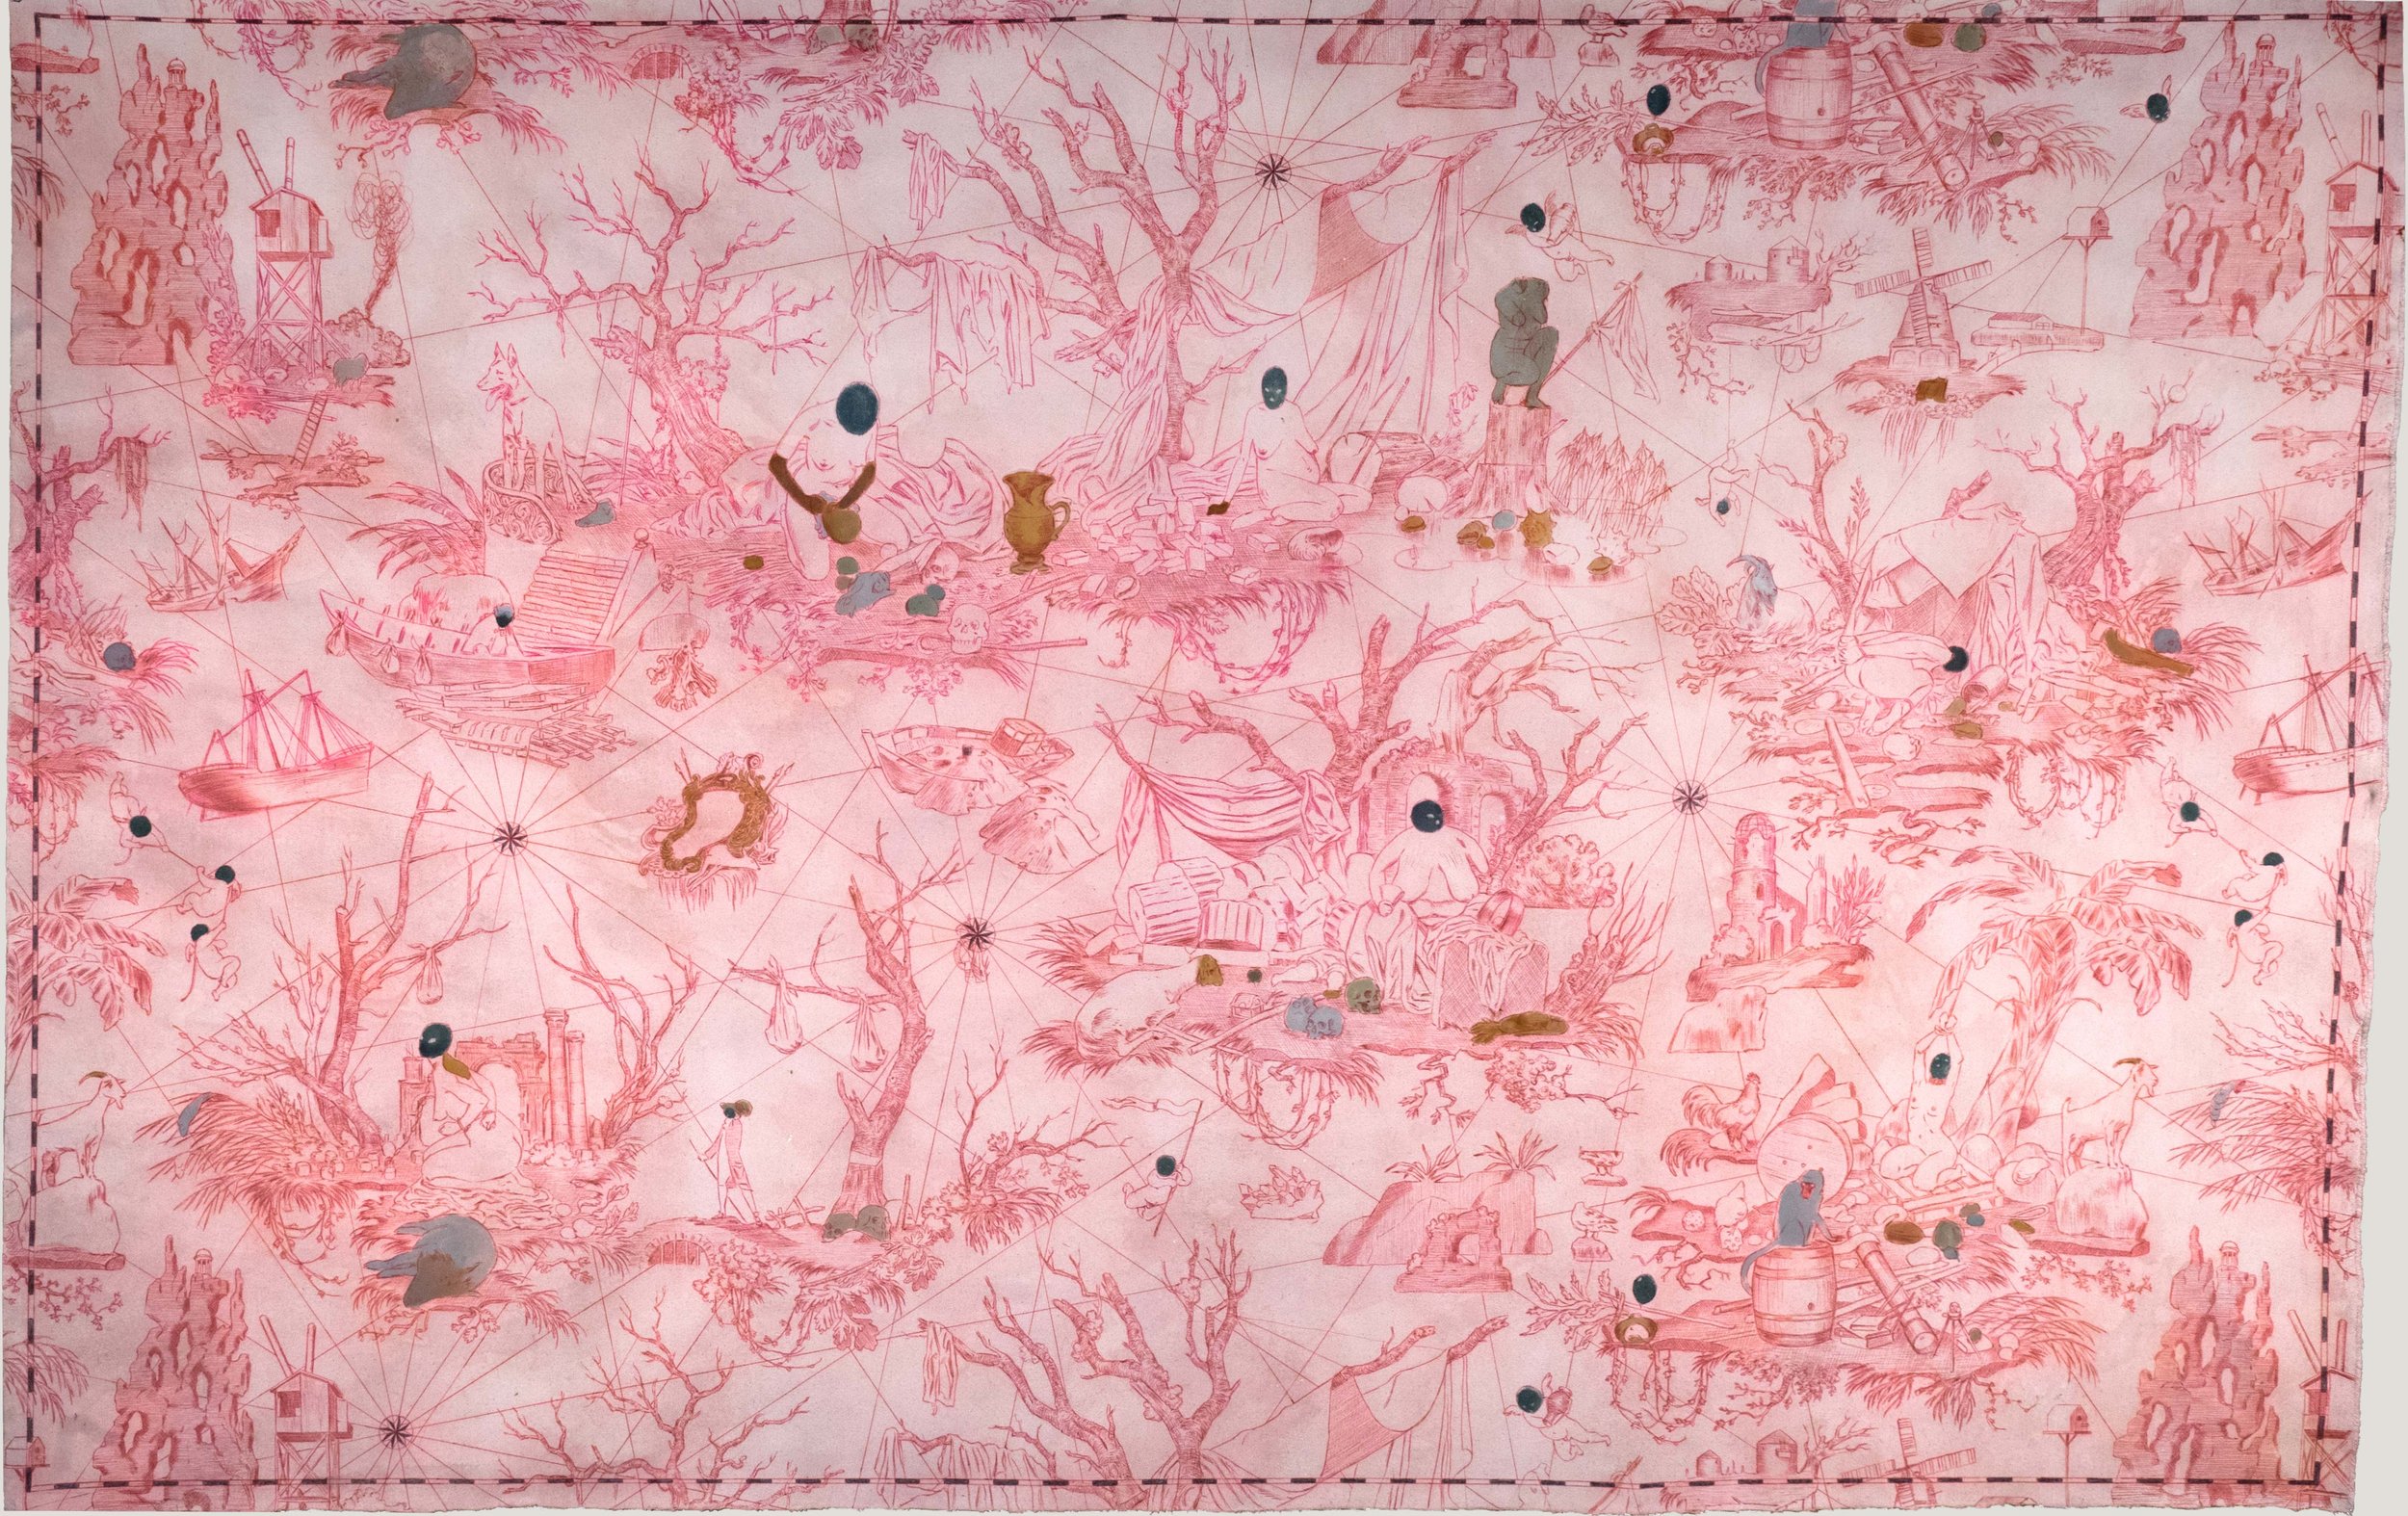   L' Archipel de Cythère  2015, Ballpoint pen and oil paint on canvas 122 x 189.5 cm 